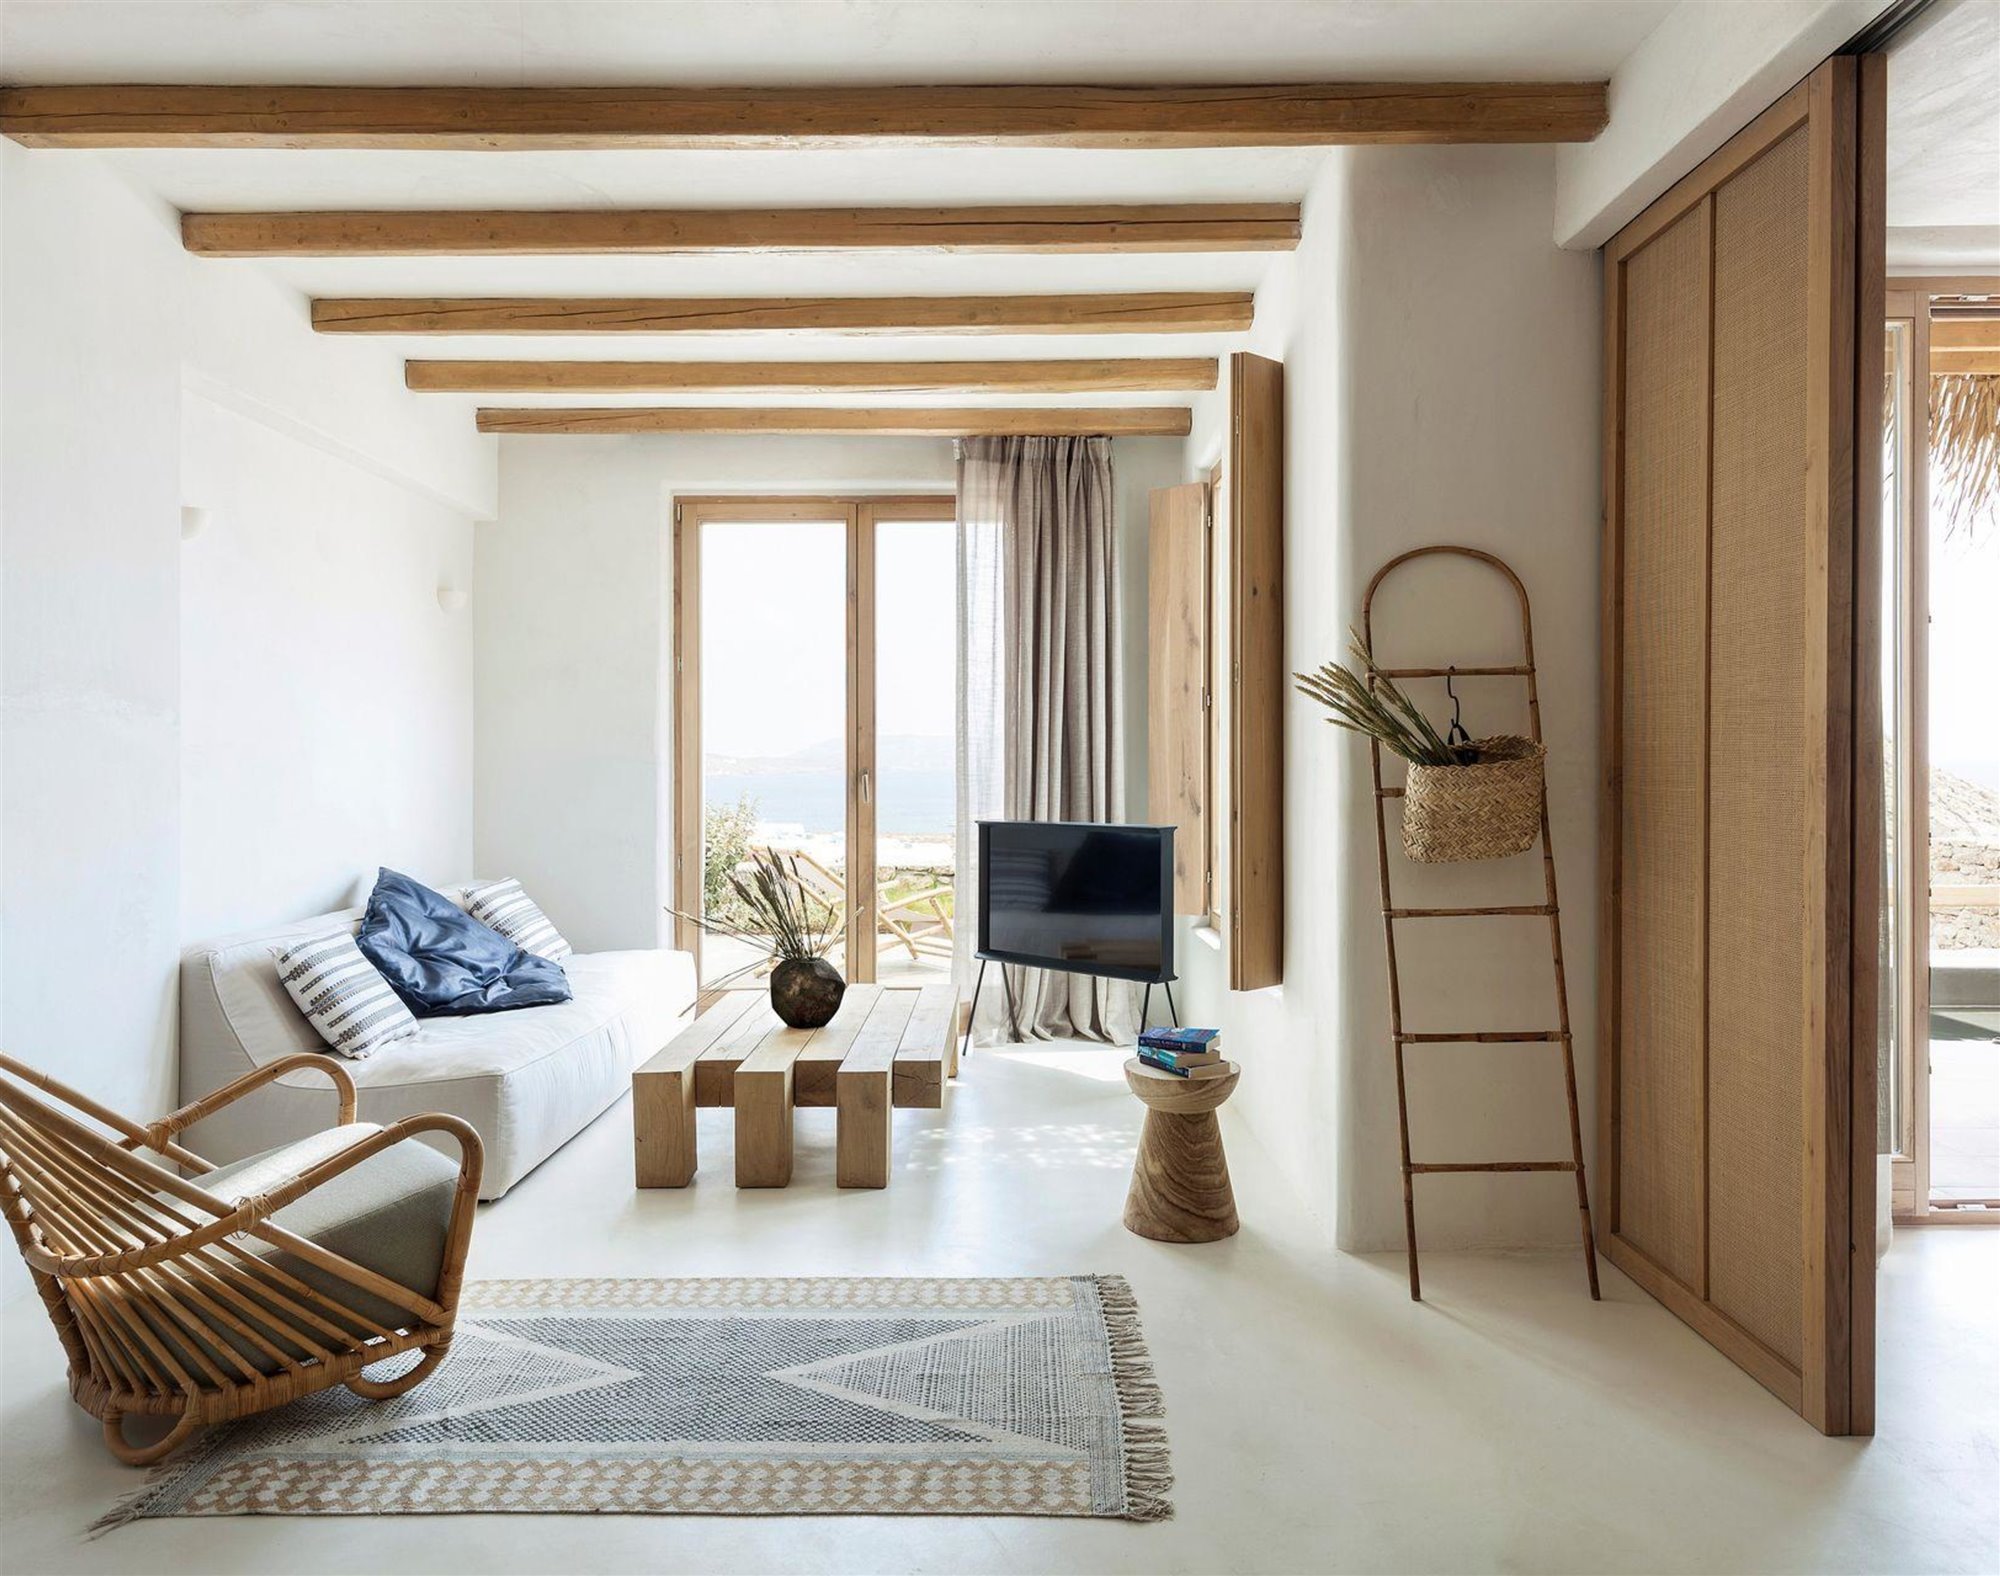 Suite con vigas de madera del Wild hotel by interni en grecia